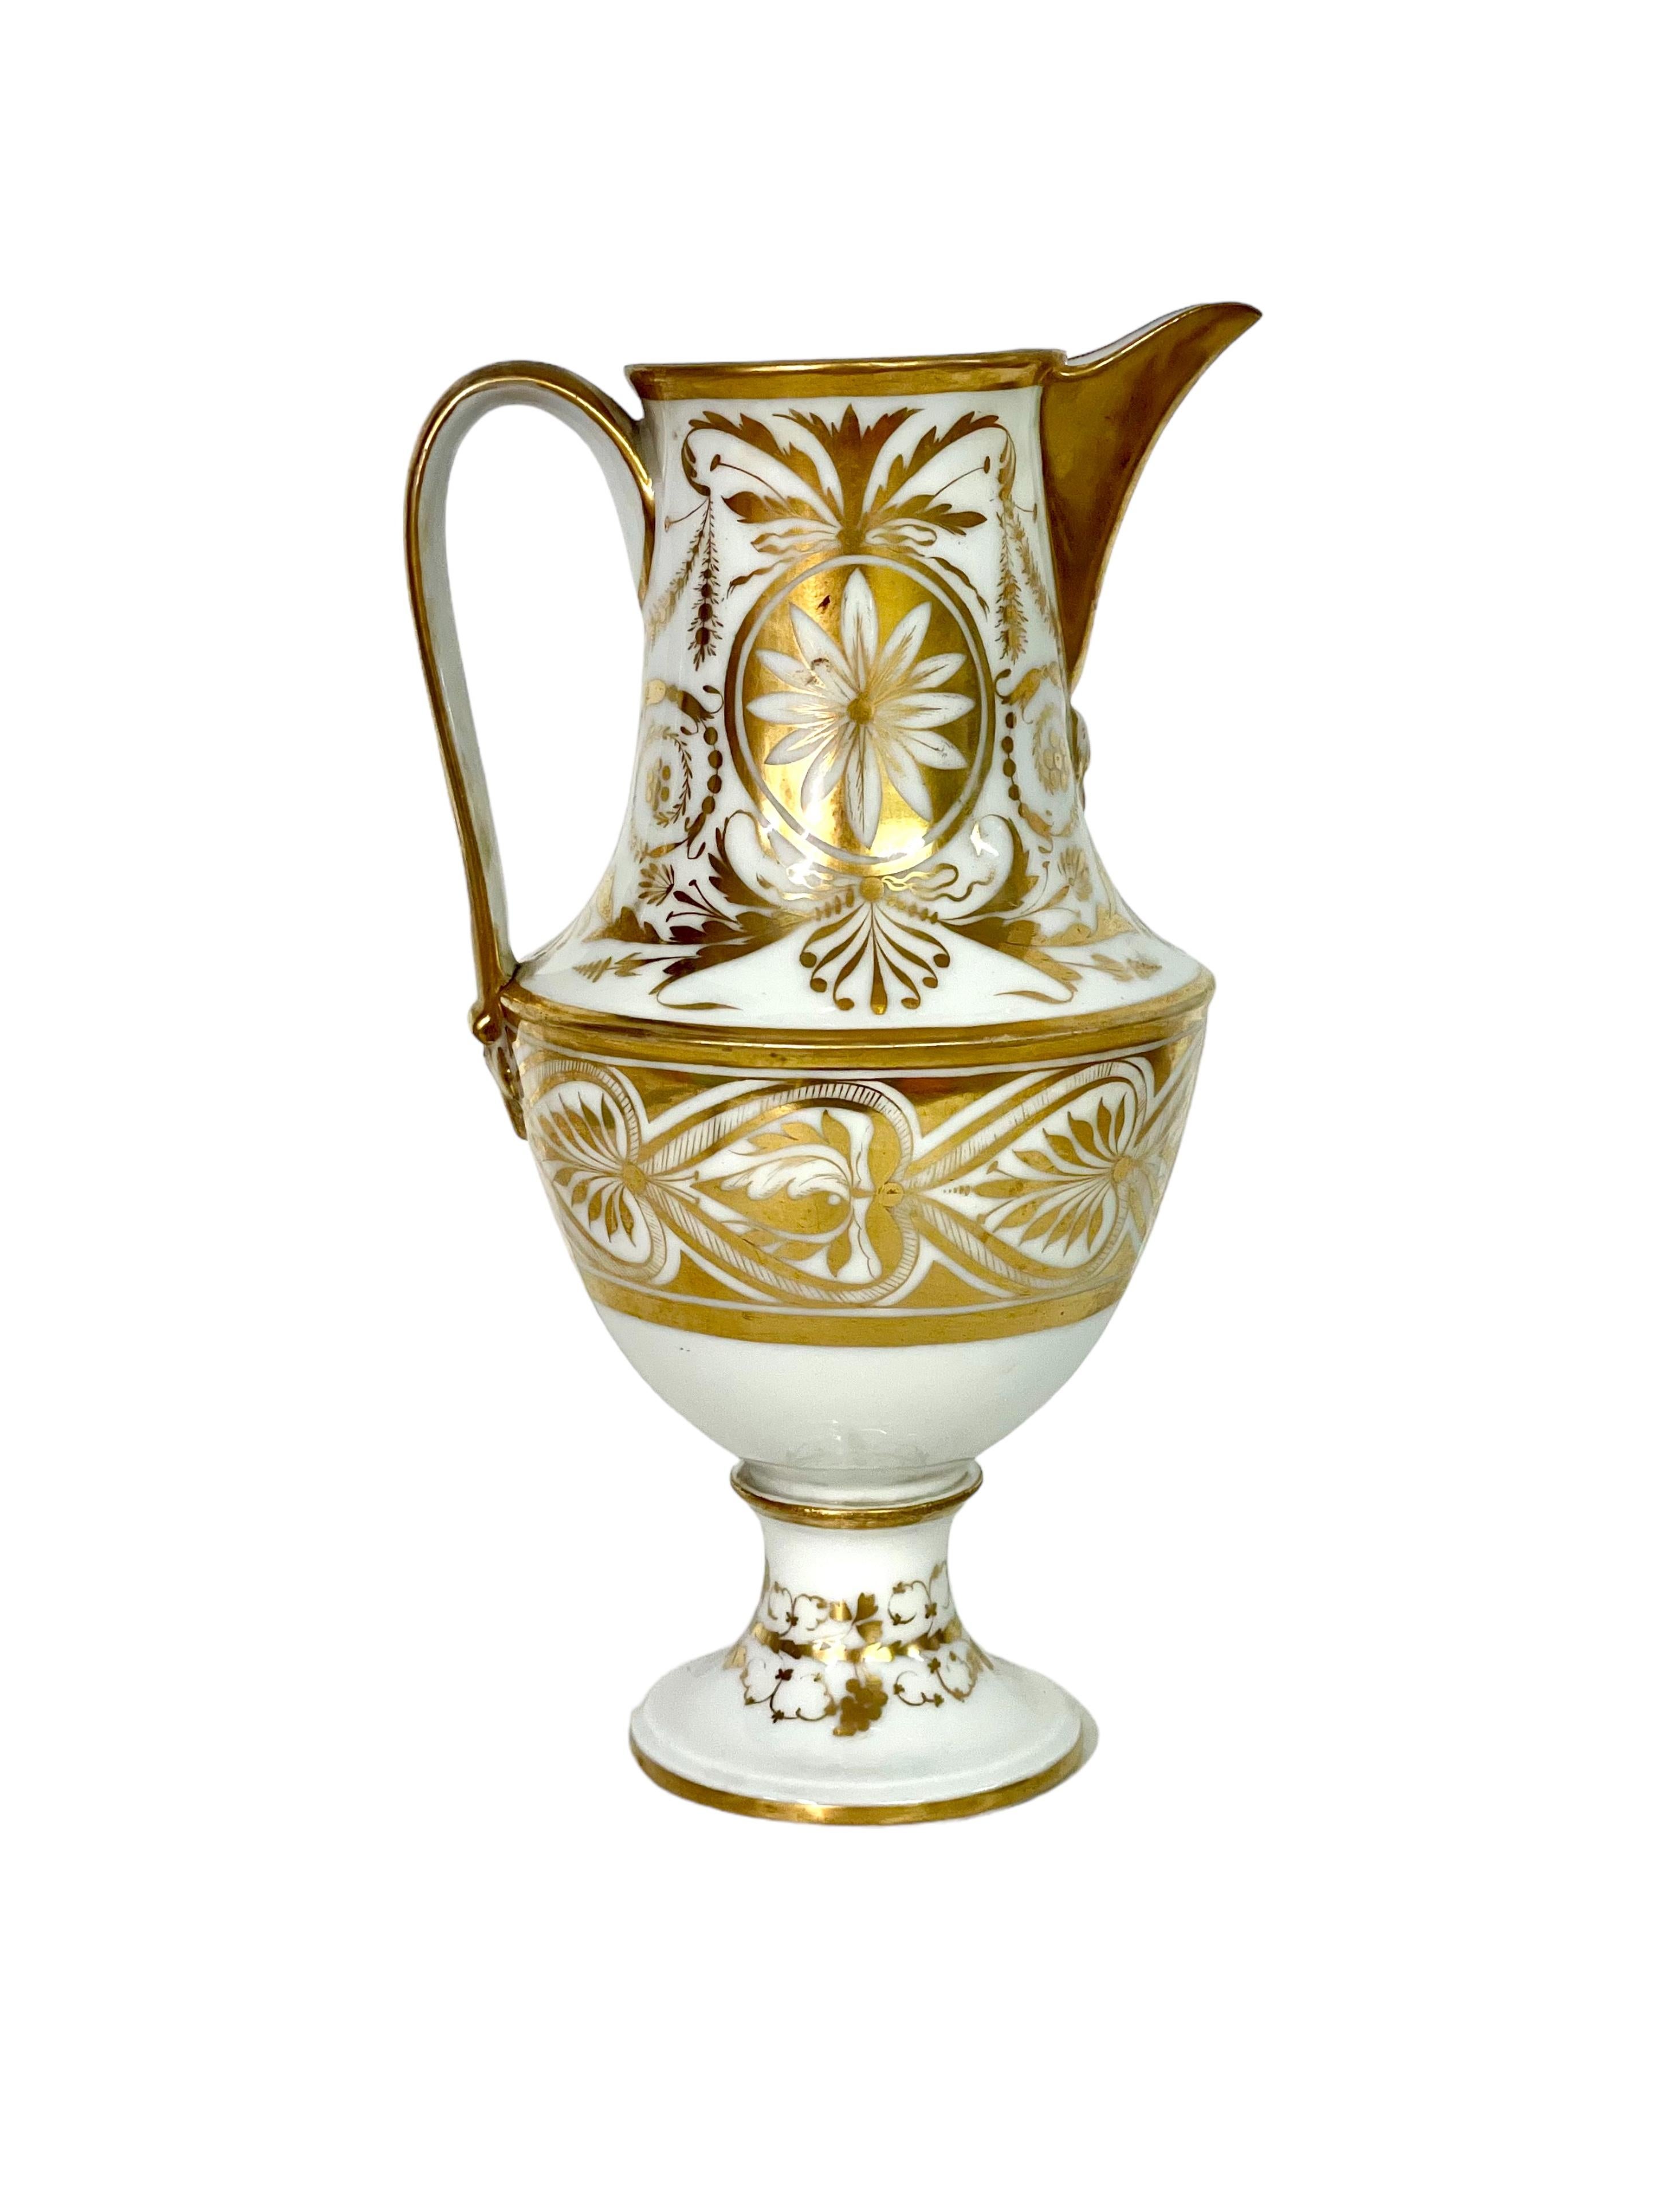 Empire Period Porcelain de Paris Water Pitcher with Gilt Decoration For Sale 1